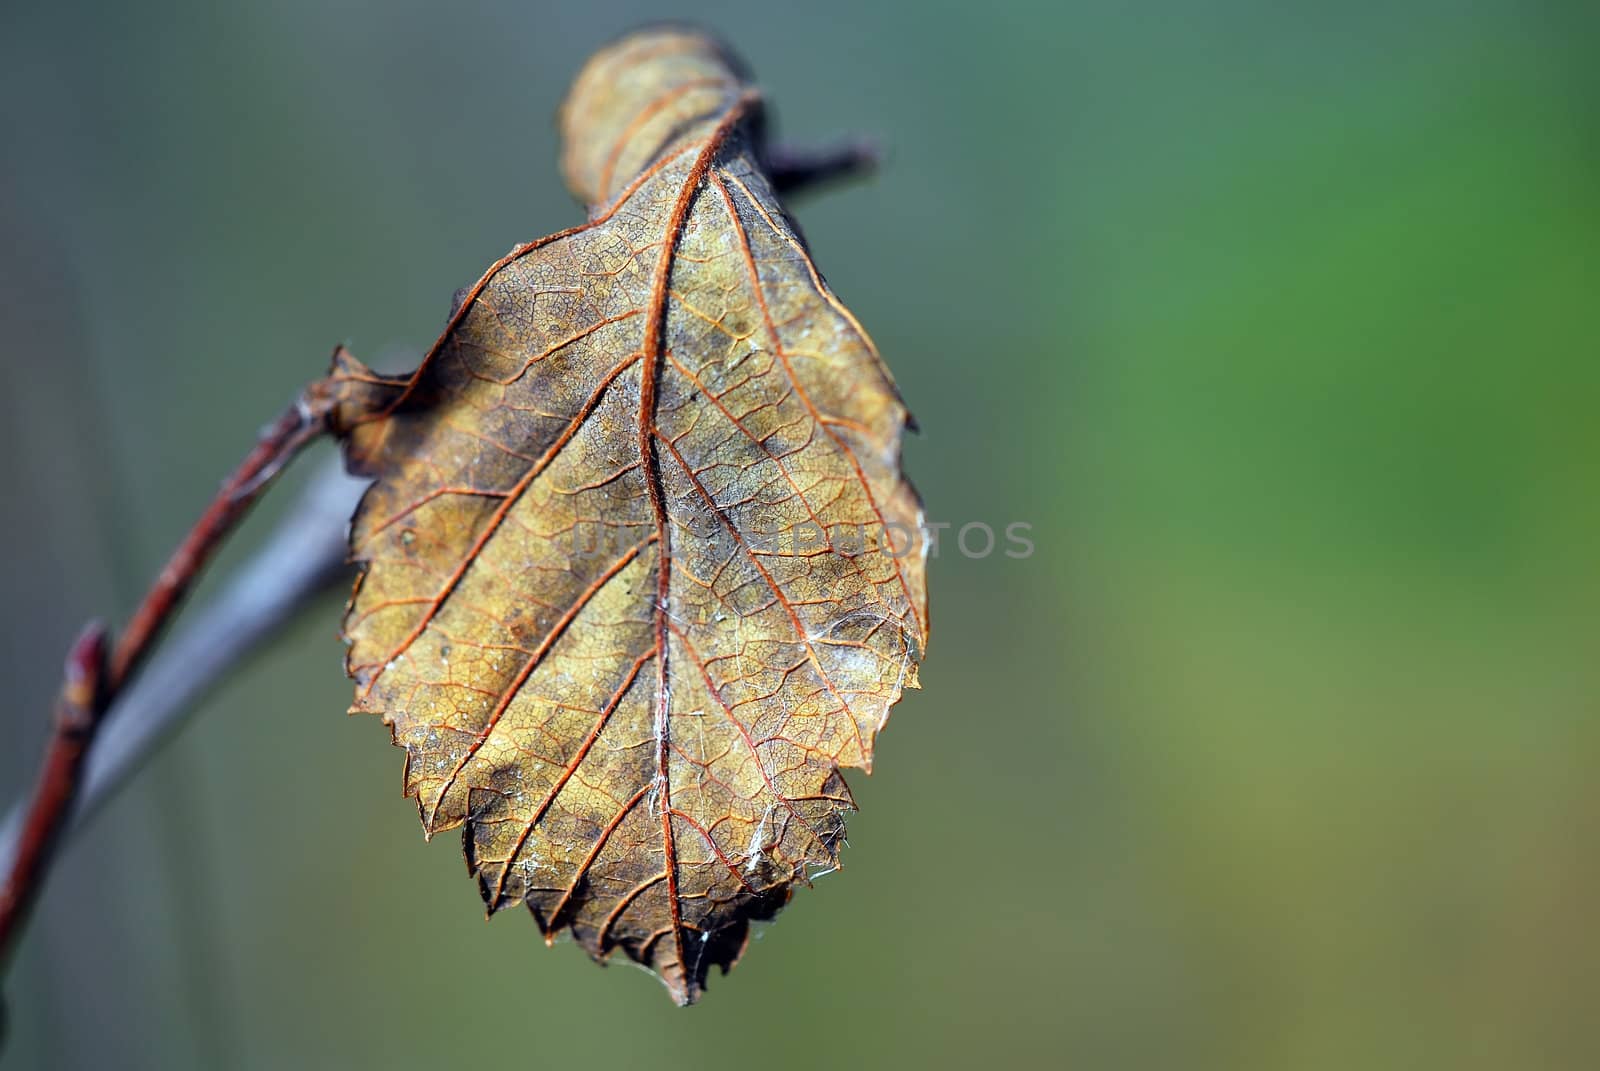 Autumn Leaf by nialat